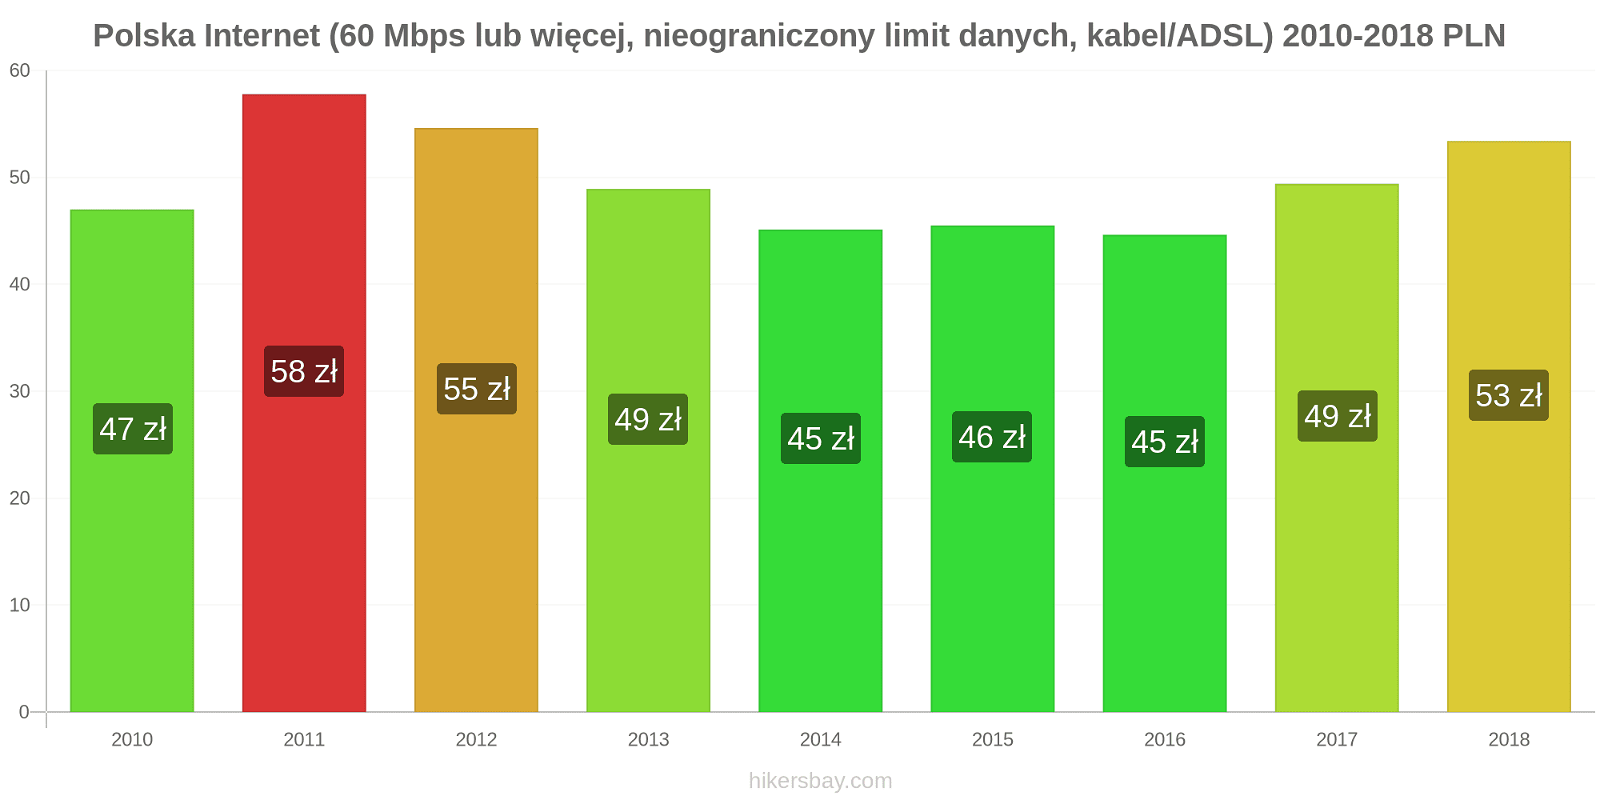 Polska zmiany cen Internet (60 Mbps lub więcej, nieograniczony limit danych, kabel/ADSL) hikersbay.com